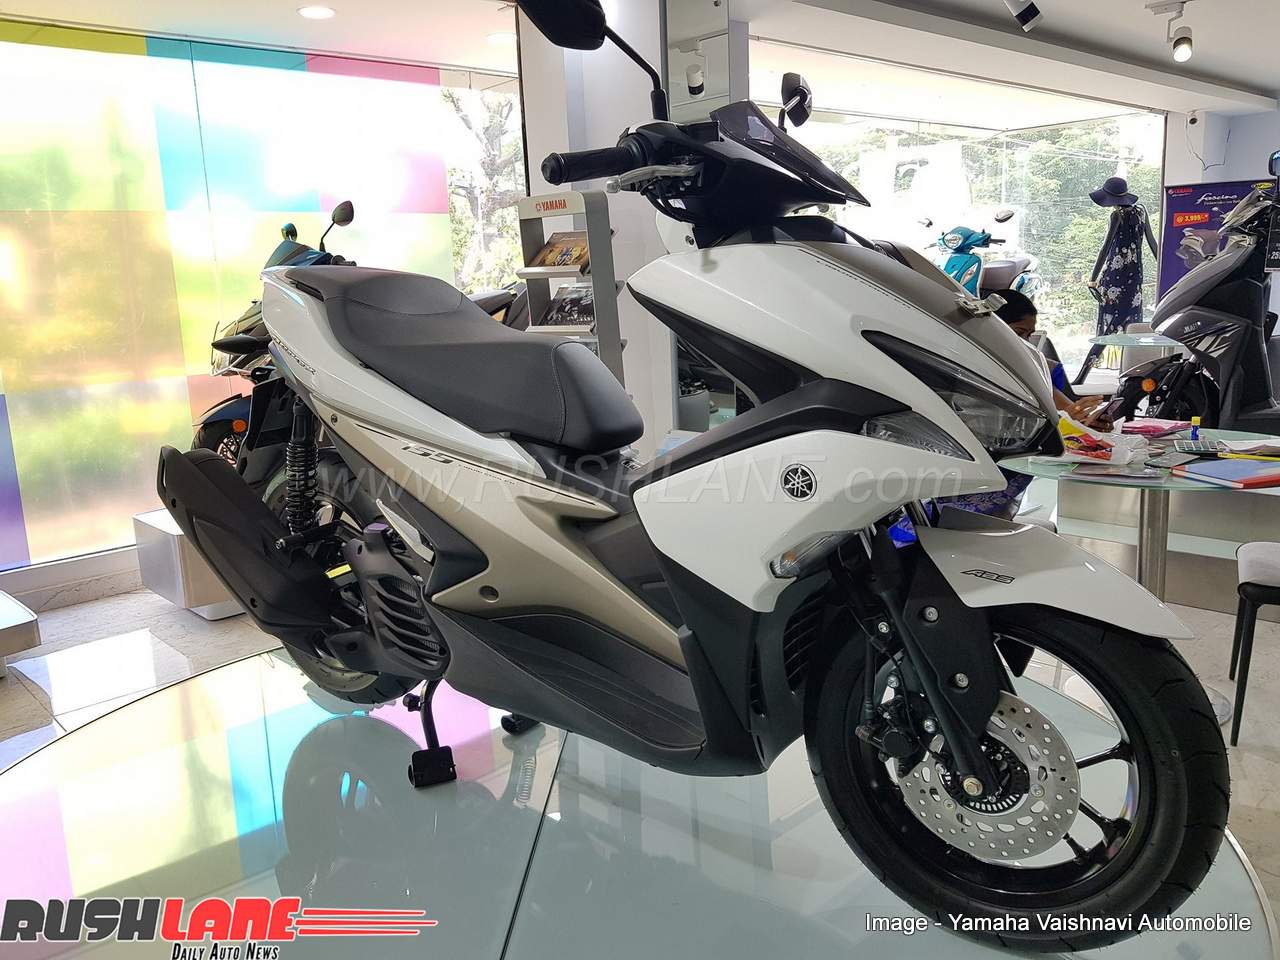 Yamaha Aerox scooter Honda Grazia rival on display at a 